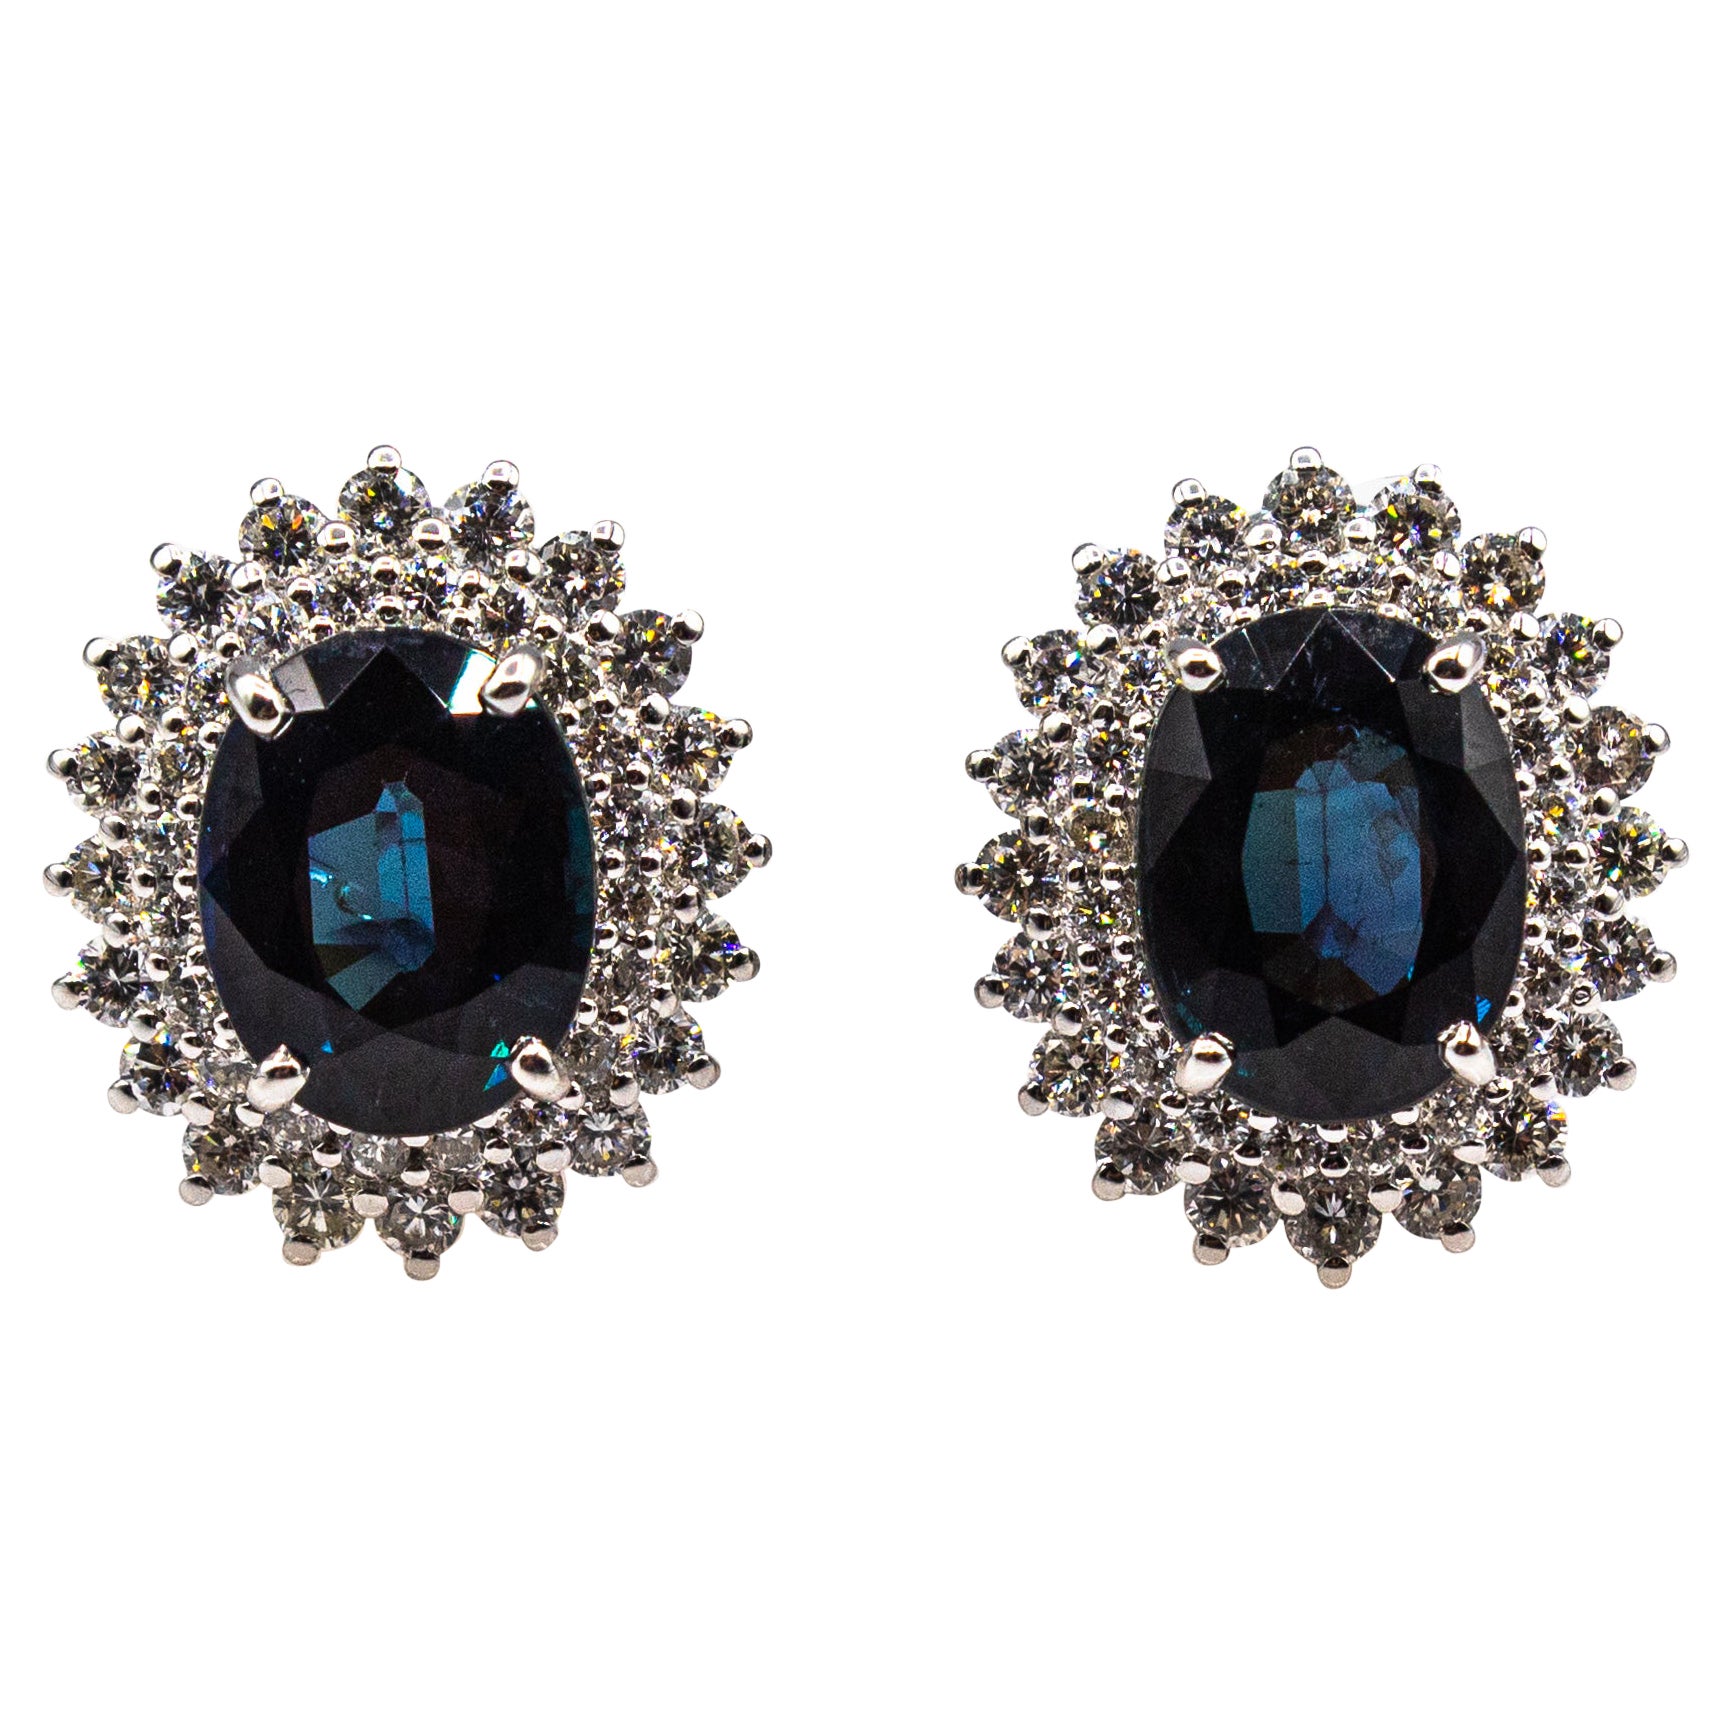 Weißgold-Ohrringe im Art-déco-Stil mit weißem Diamanten im Brillantschliff und blauem Saphir